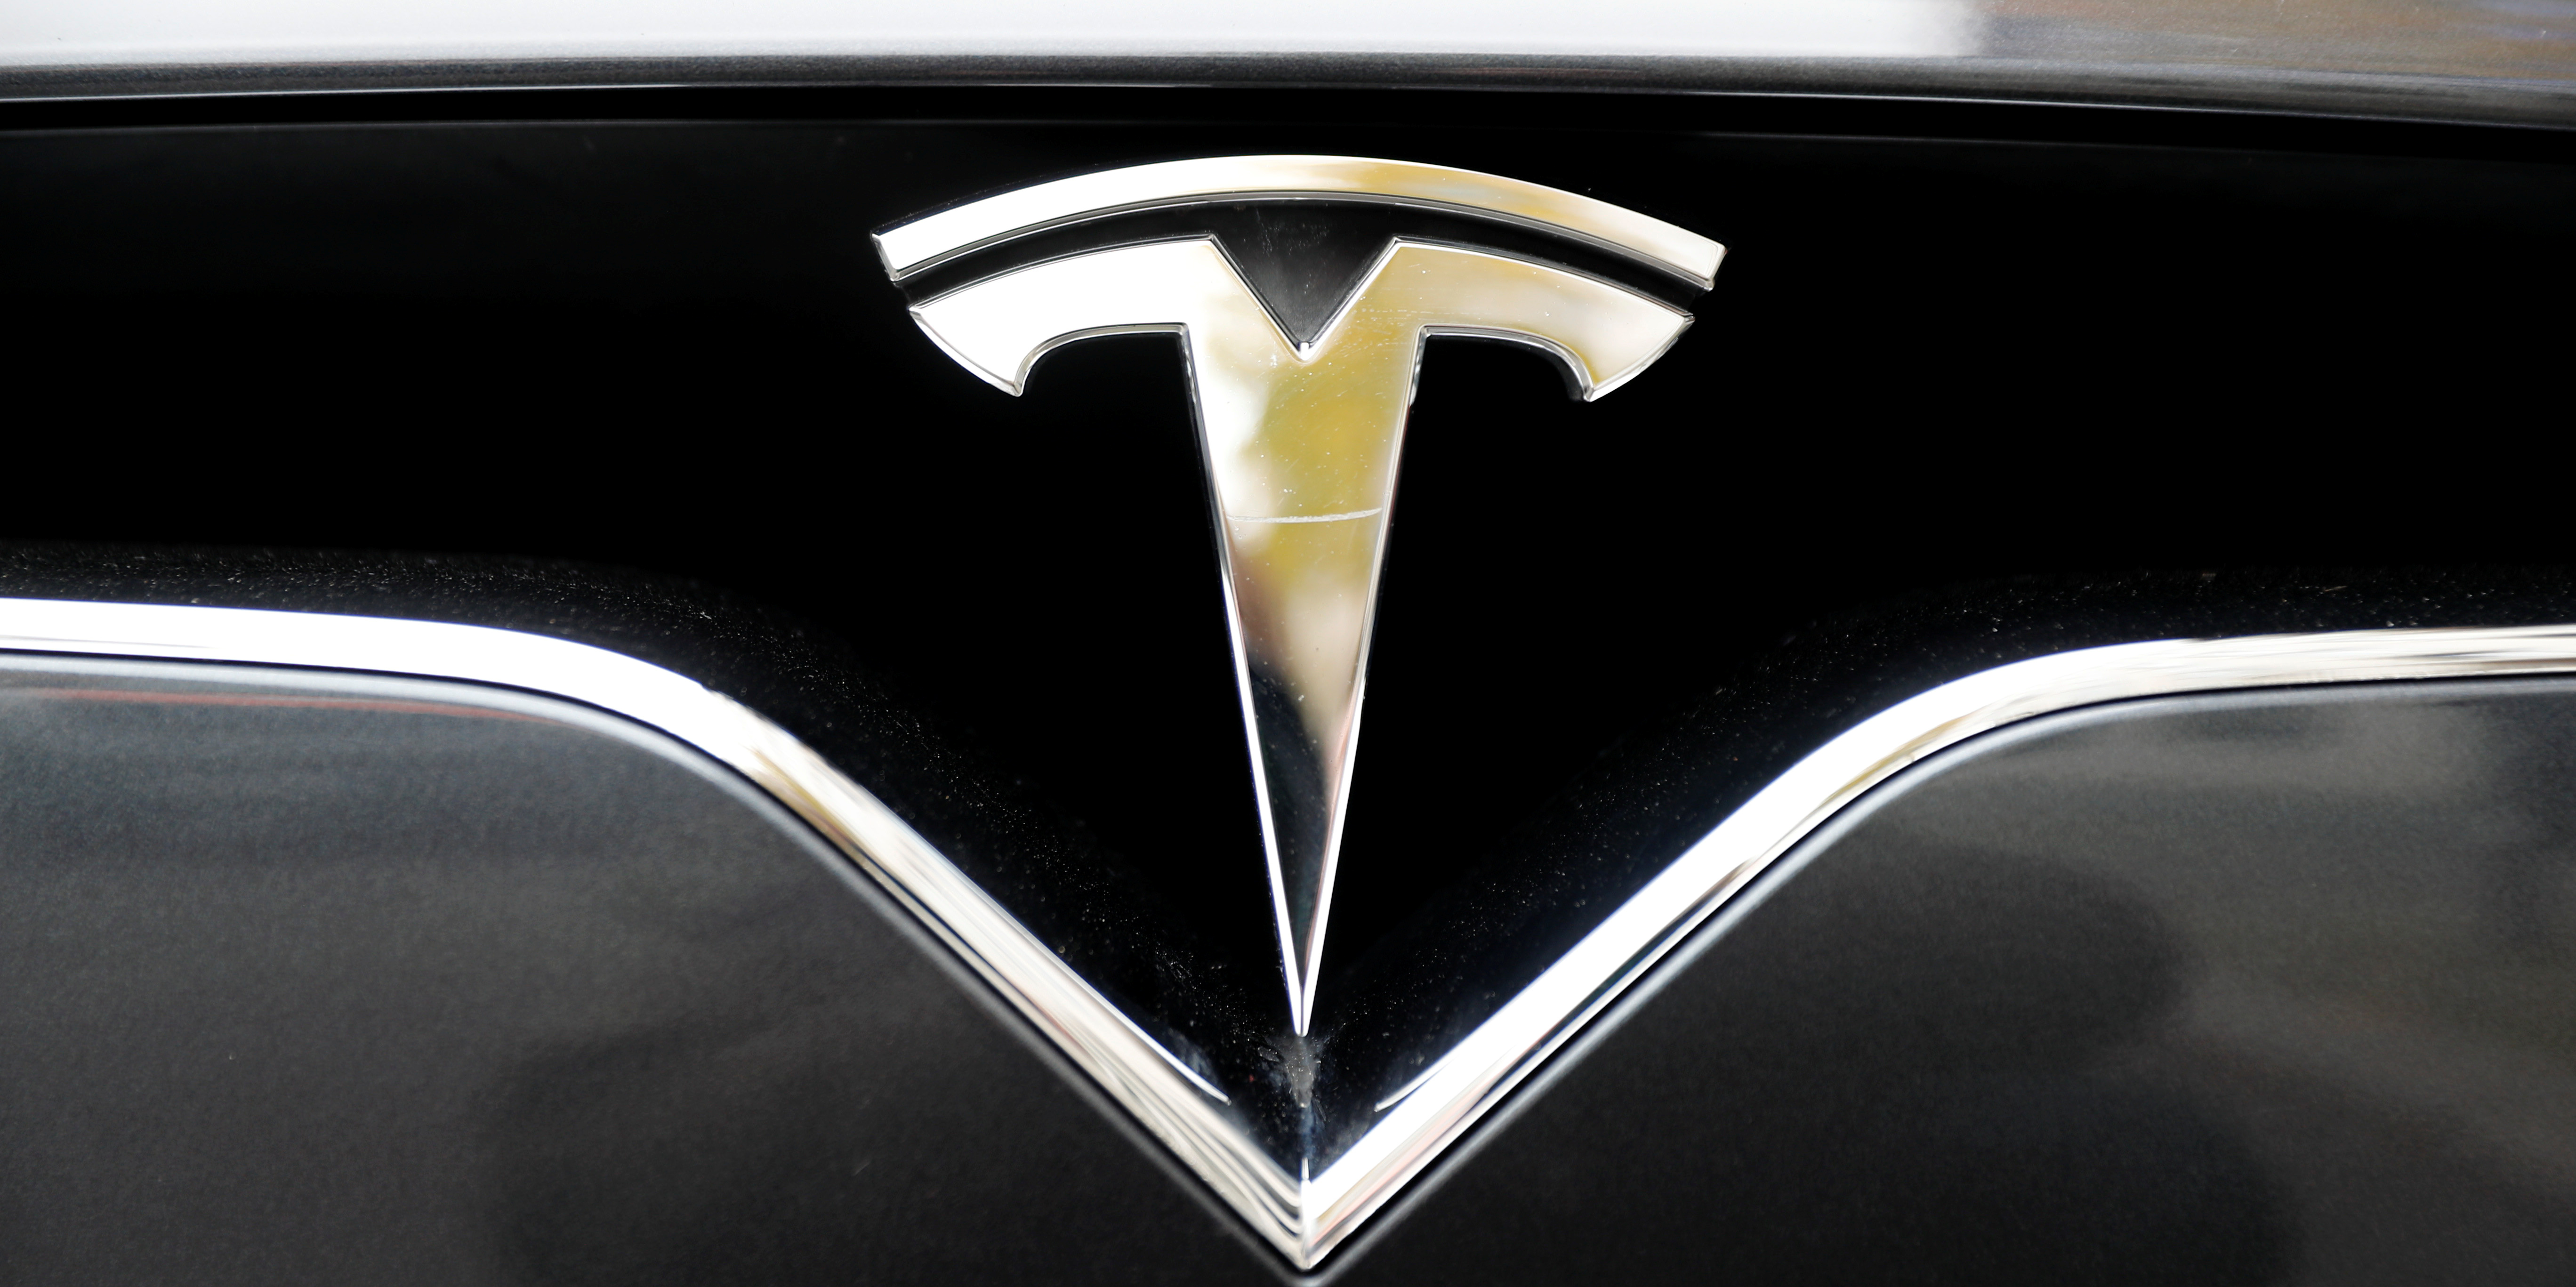 Tesla va-t-il franchir les 100 milliards de valorisation boursière ?